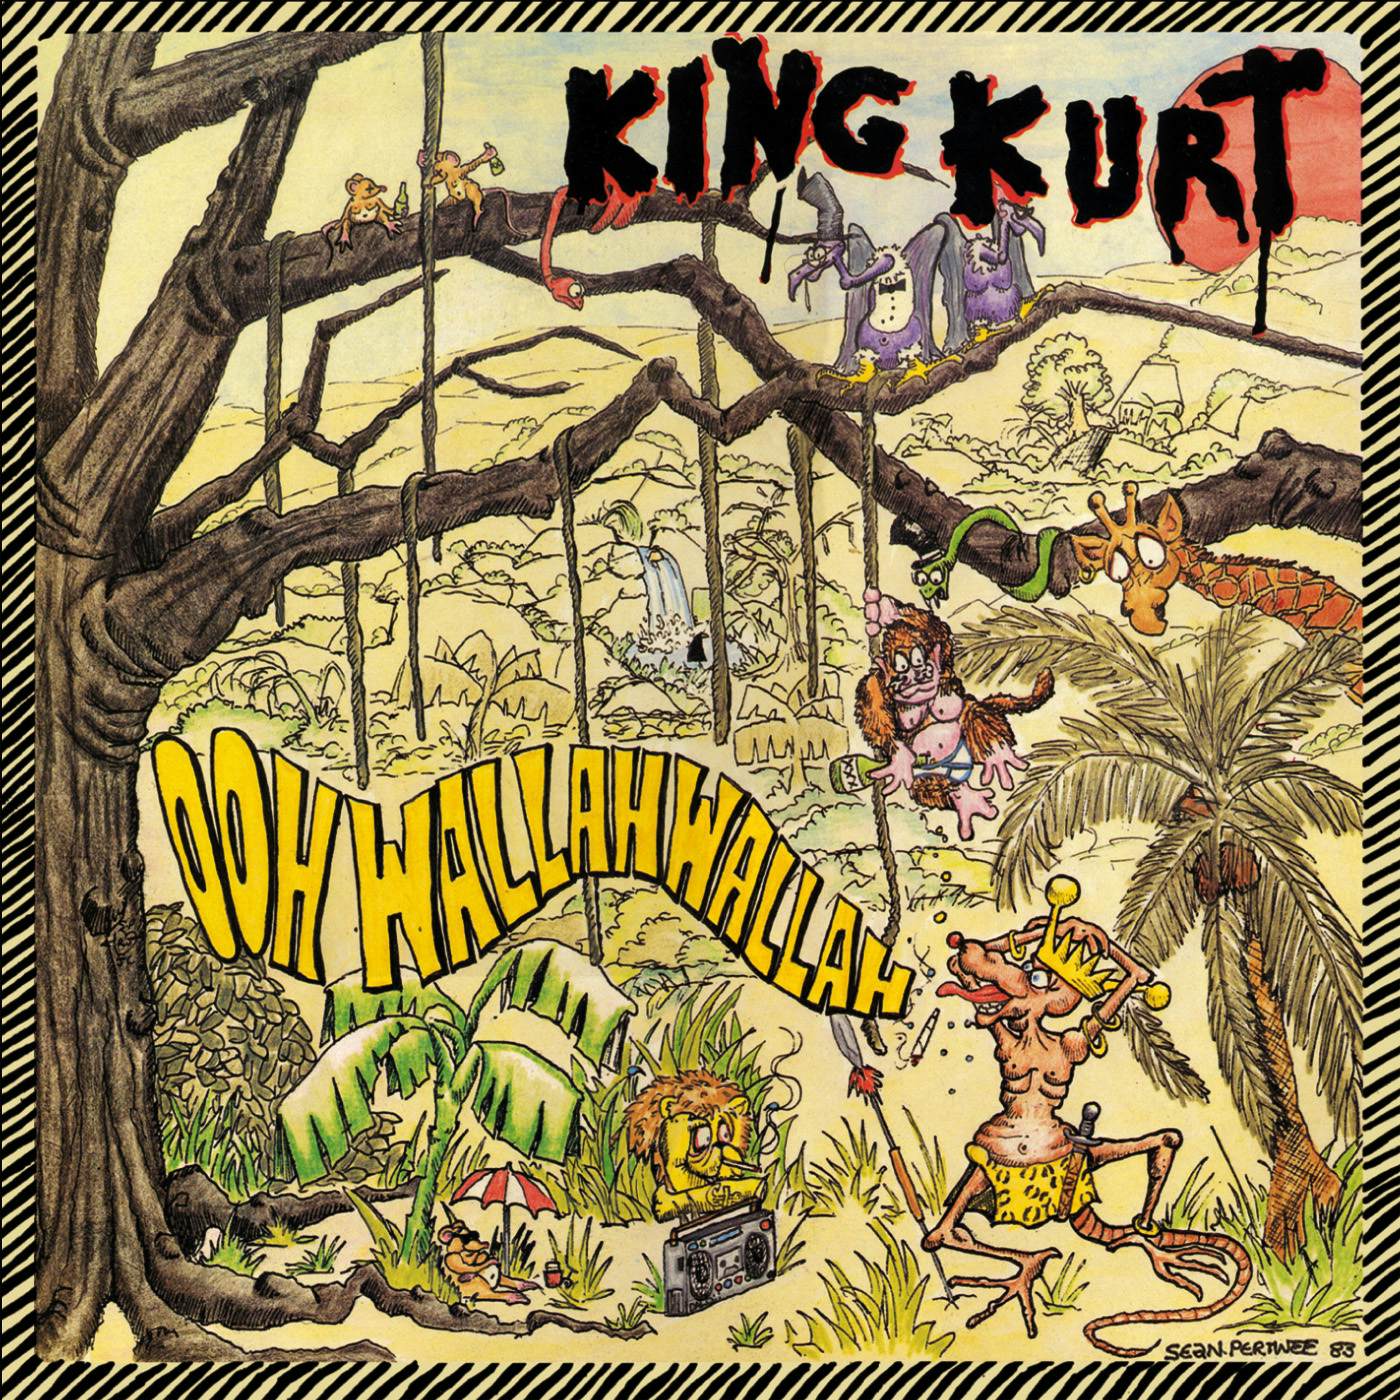 King Kurt Ooh Wallah Wallah CD